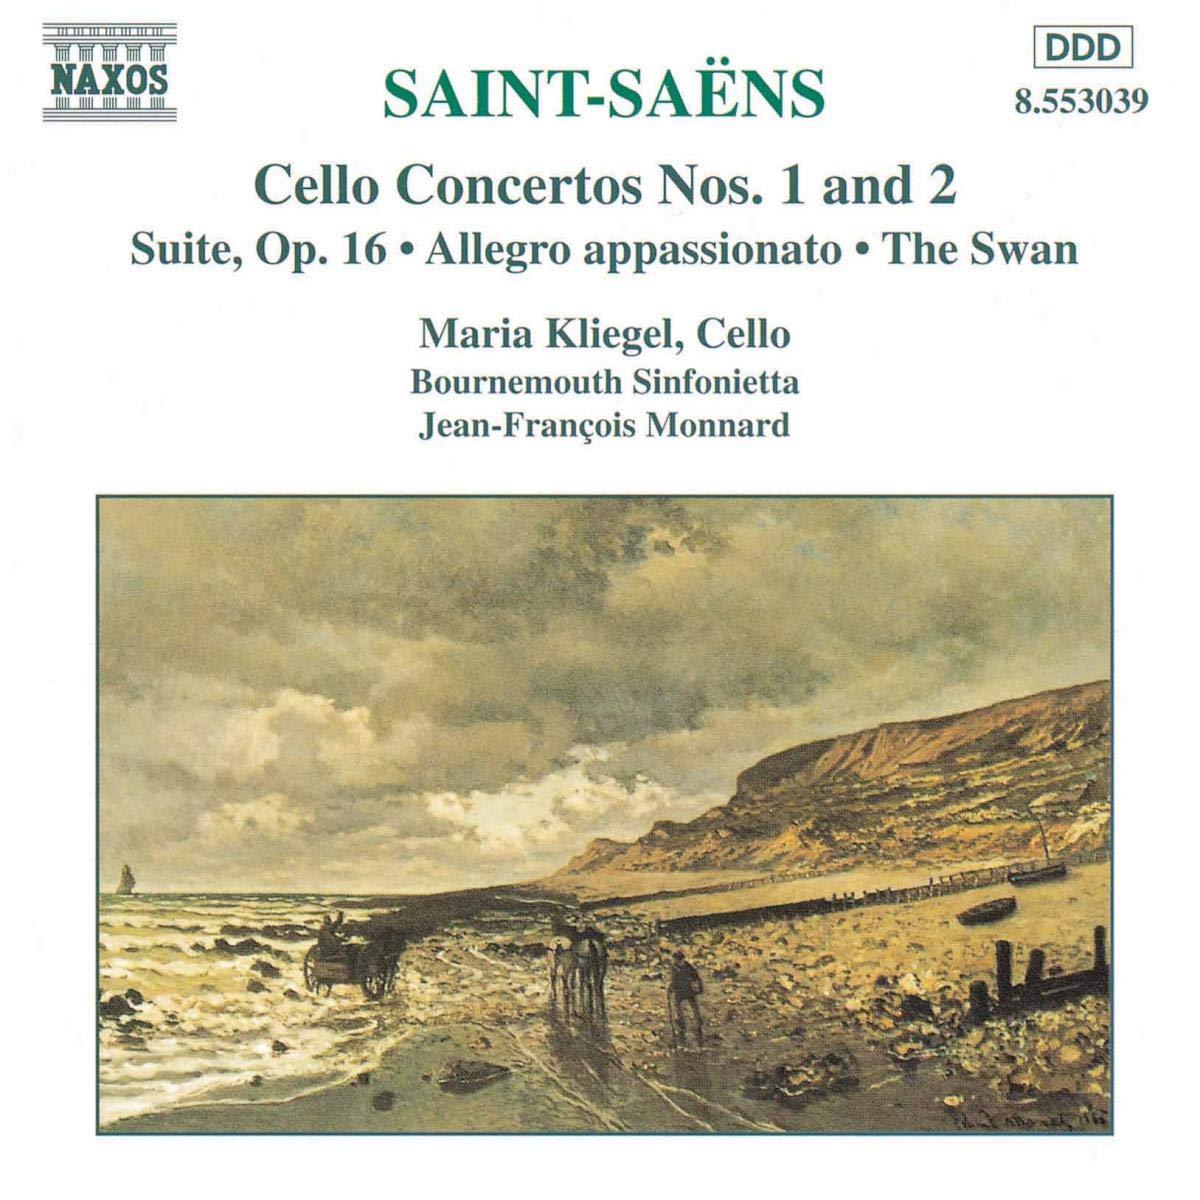 SAINT-SAENS: Cello Concertos nos. 1 & 2